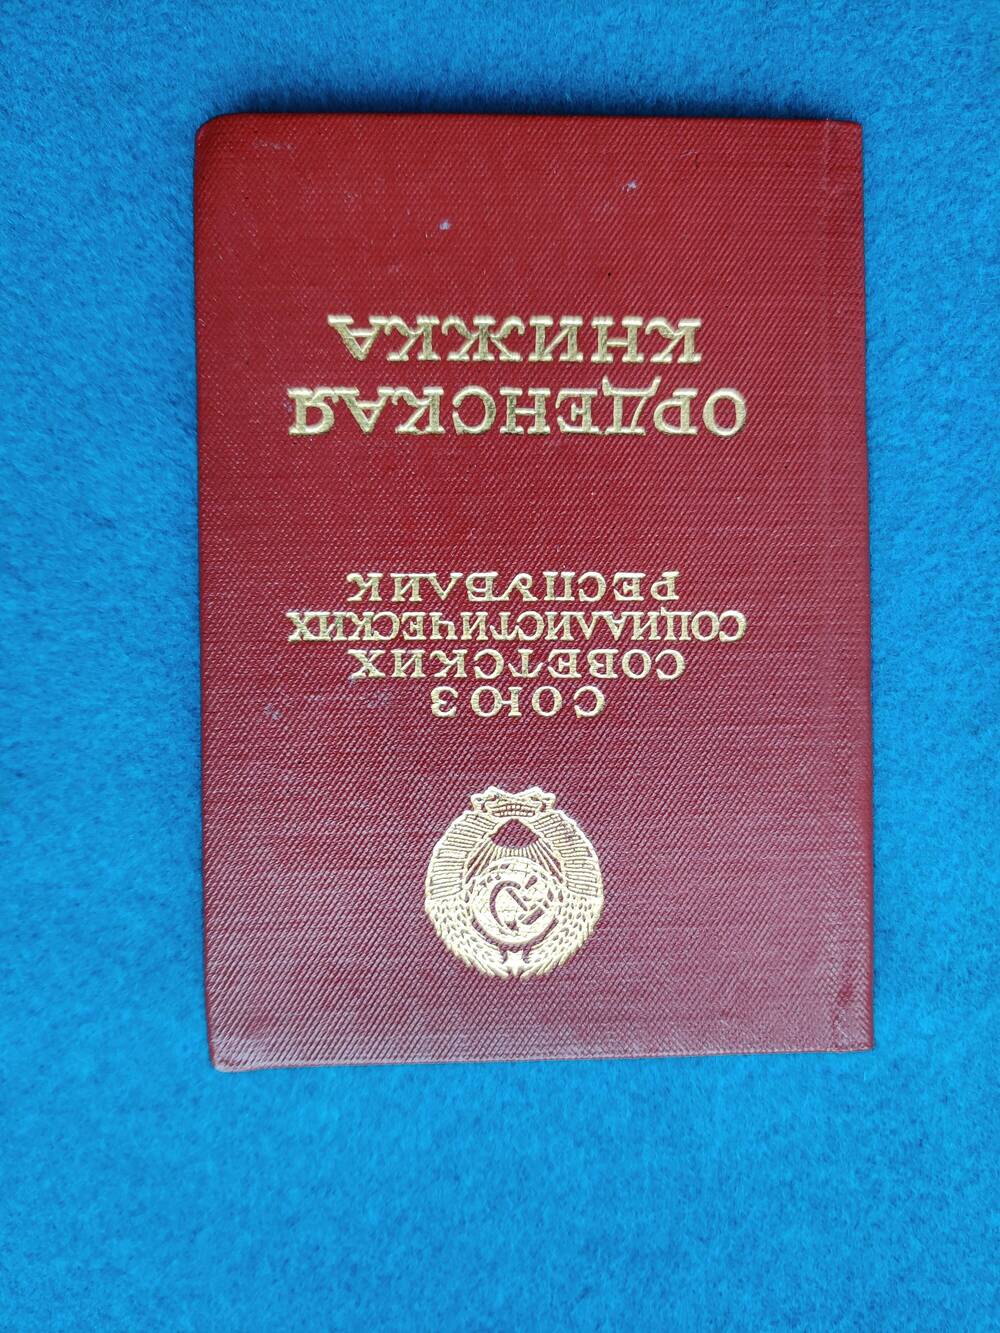 Книжка орденская Ж №255700 Закияшко С. П.